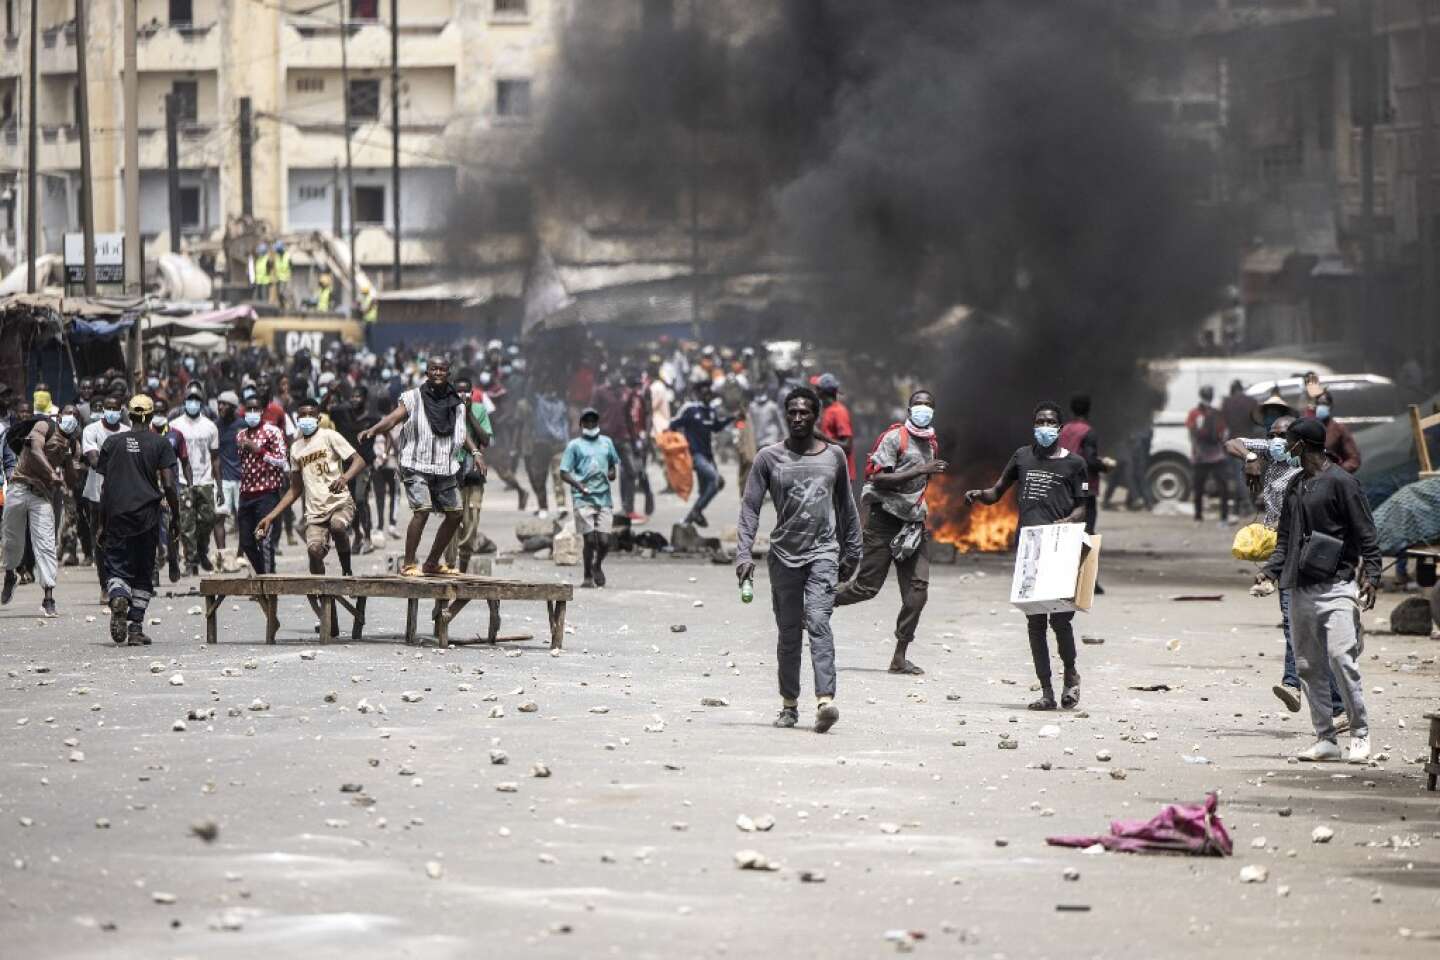 Au Sénégal, le président Macky Sall exige des mesures pour arrêter les troubles